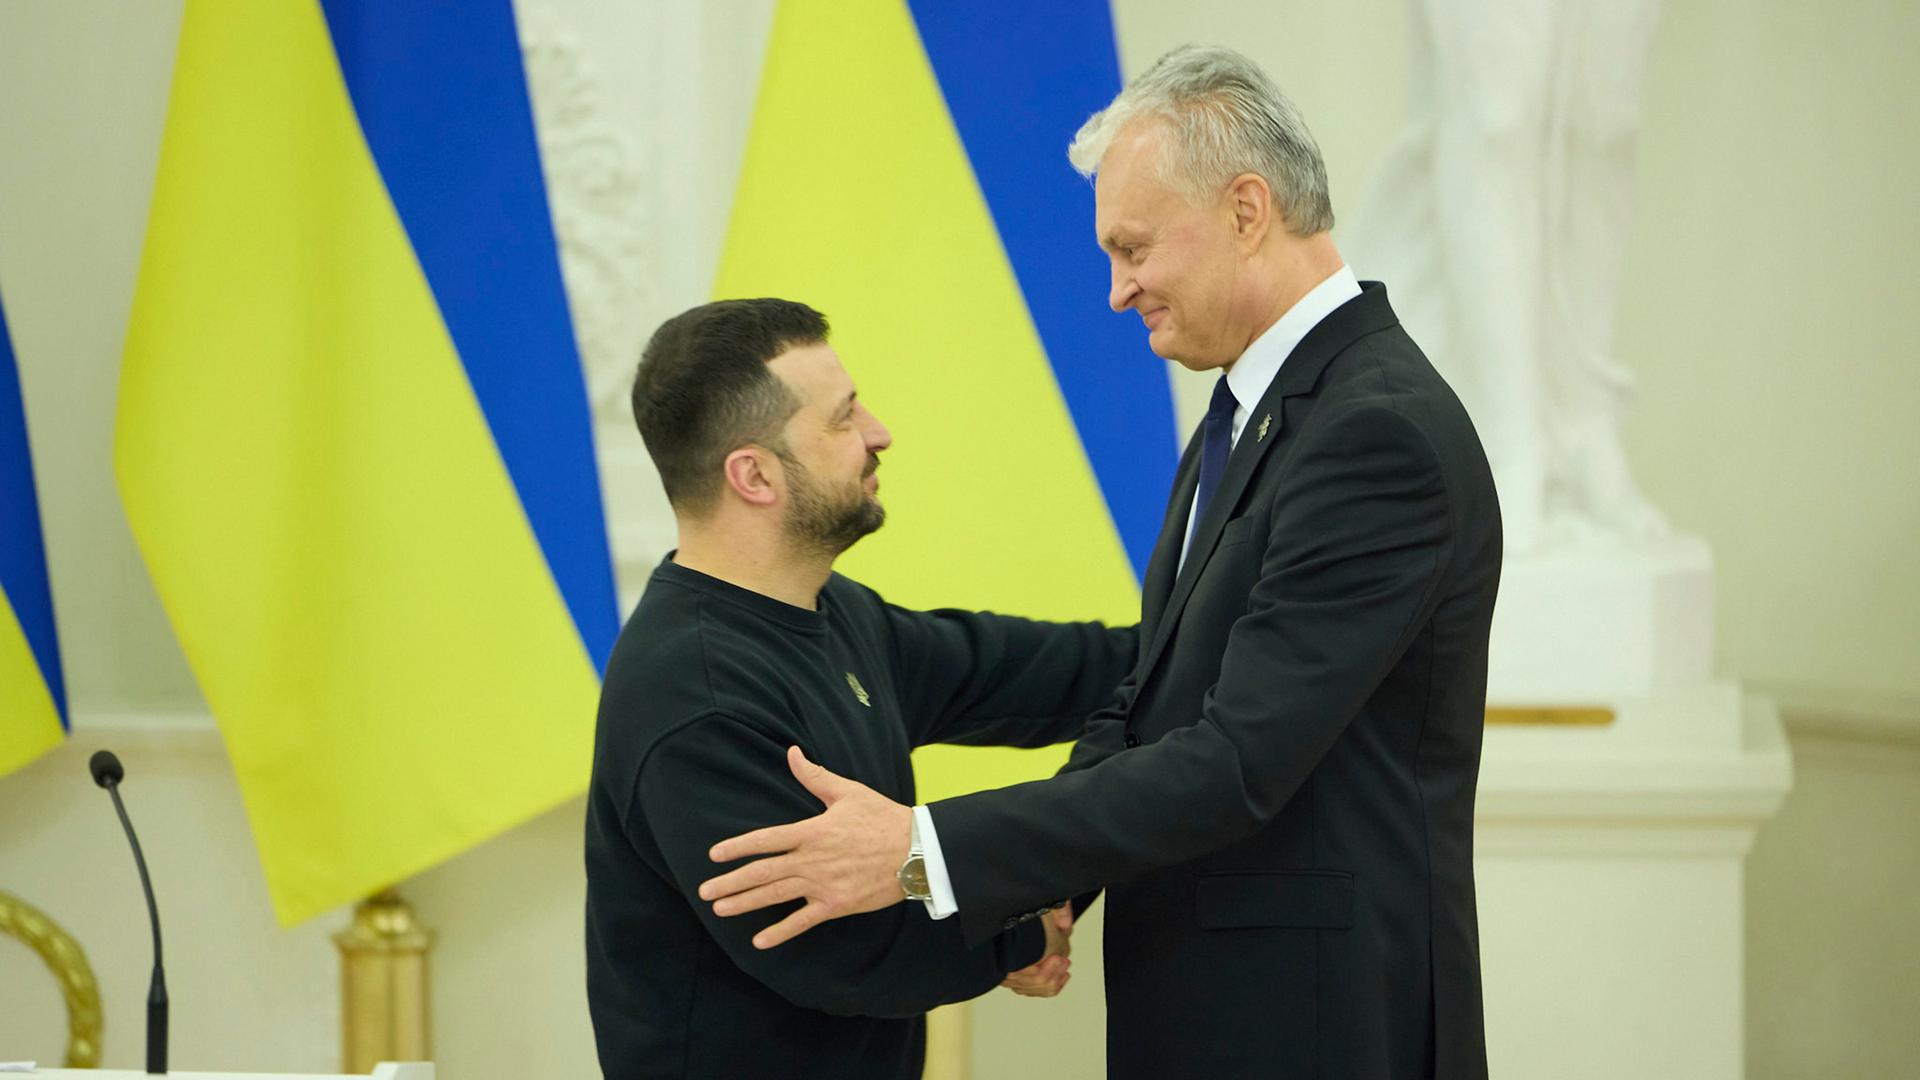 Der ukrainische Präsident Wolodymyr Selenskyj begrüßt seinen litauischen Amtskollegen Gitanas Nauseda.